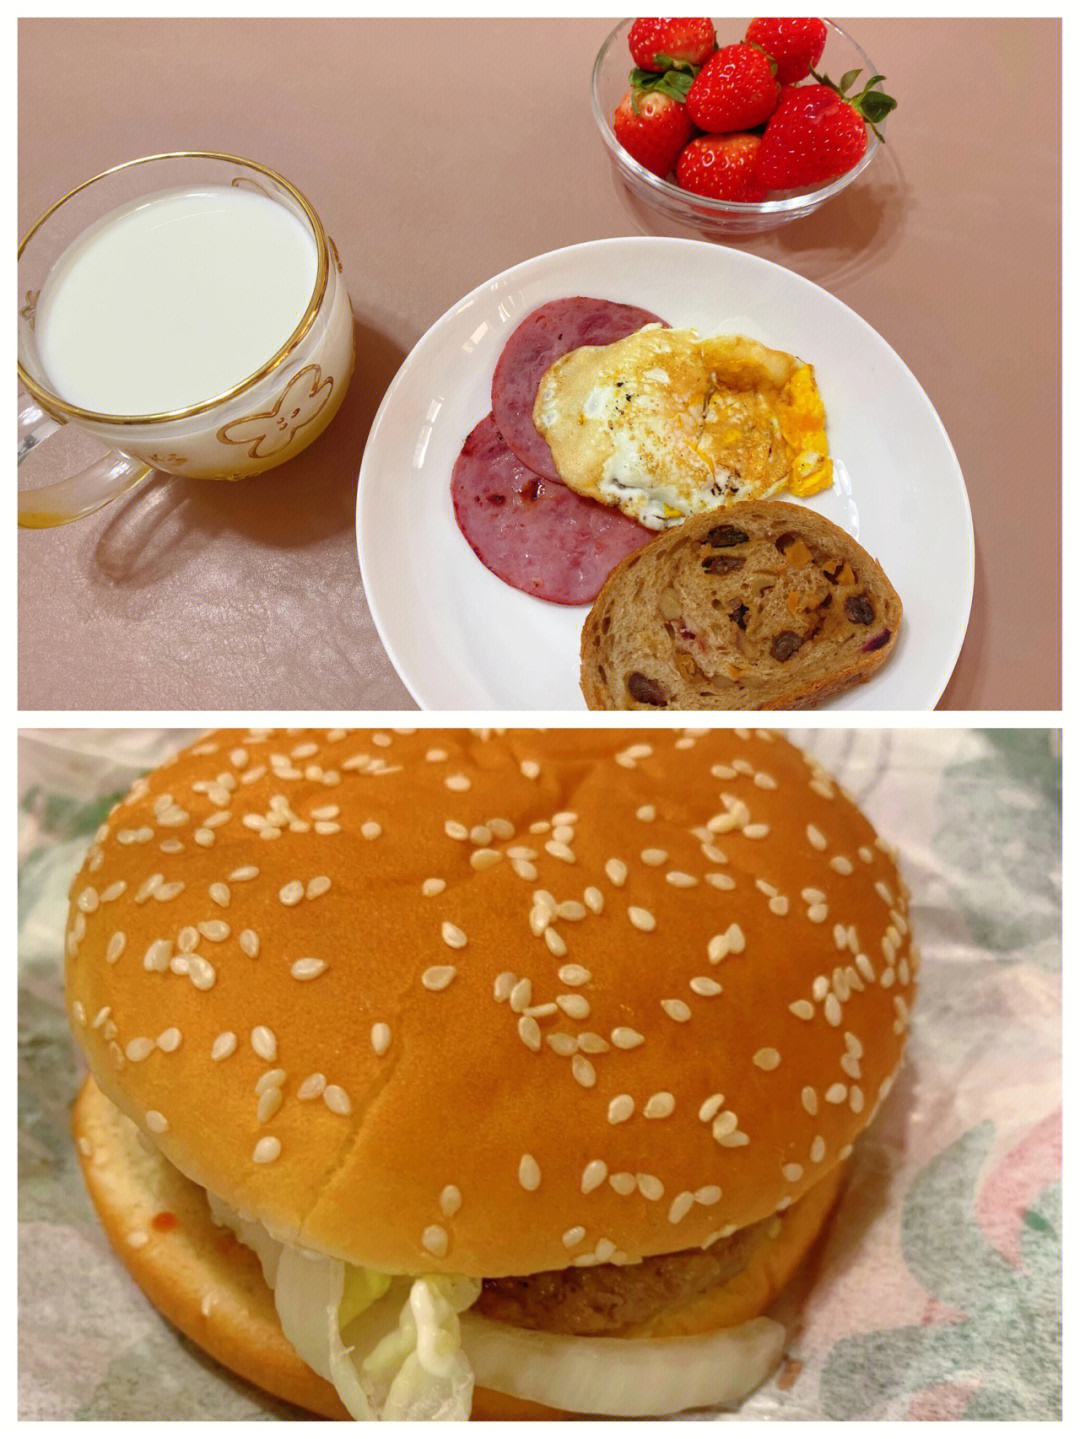 03早餐:牛奶,裸麦面包,鸡蛋,牛肉片,小草莓·03午餐:汉堡王鸡腿